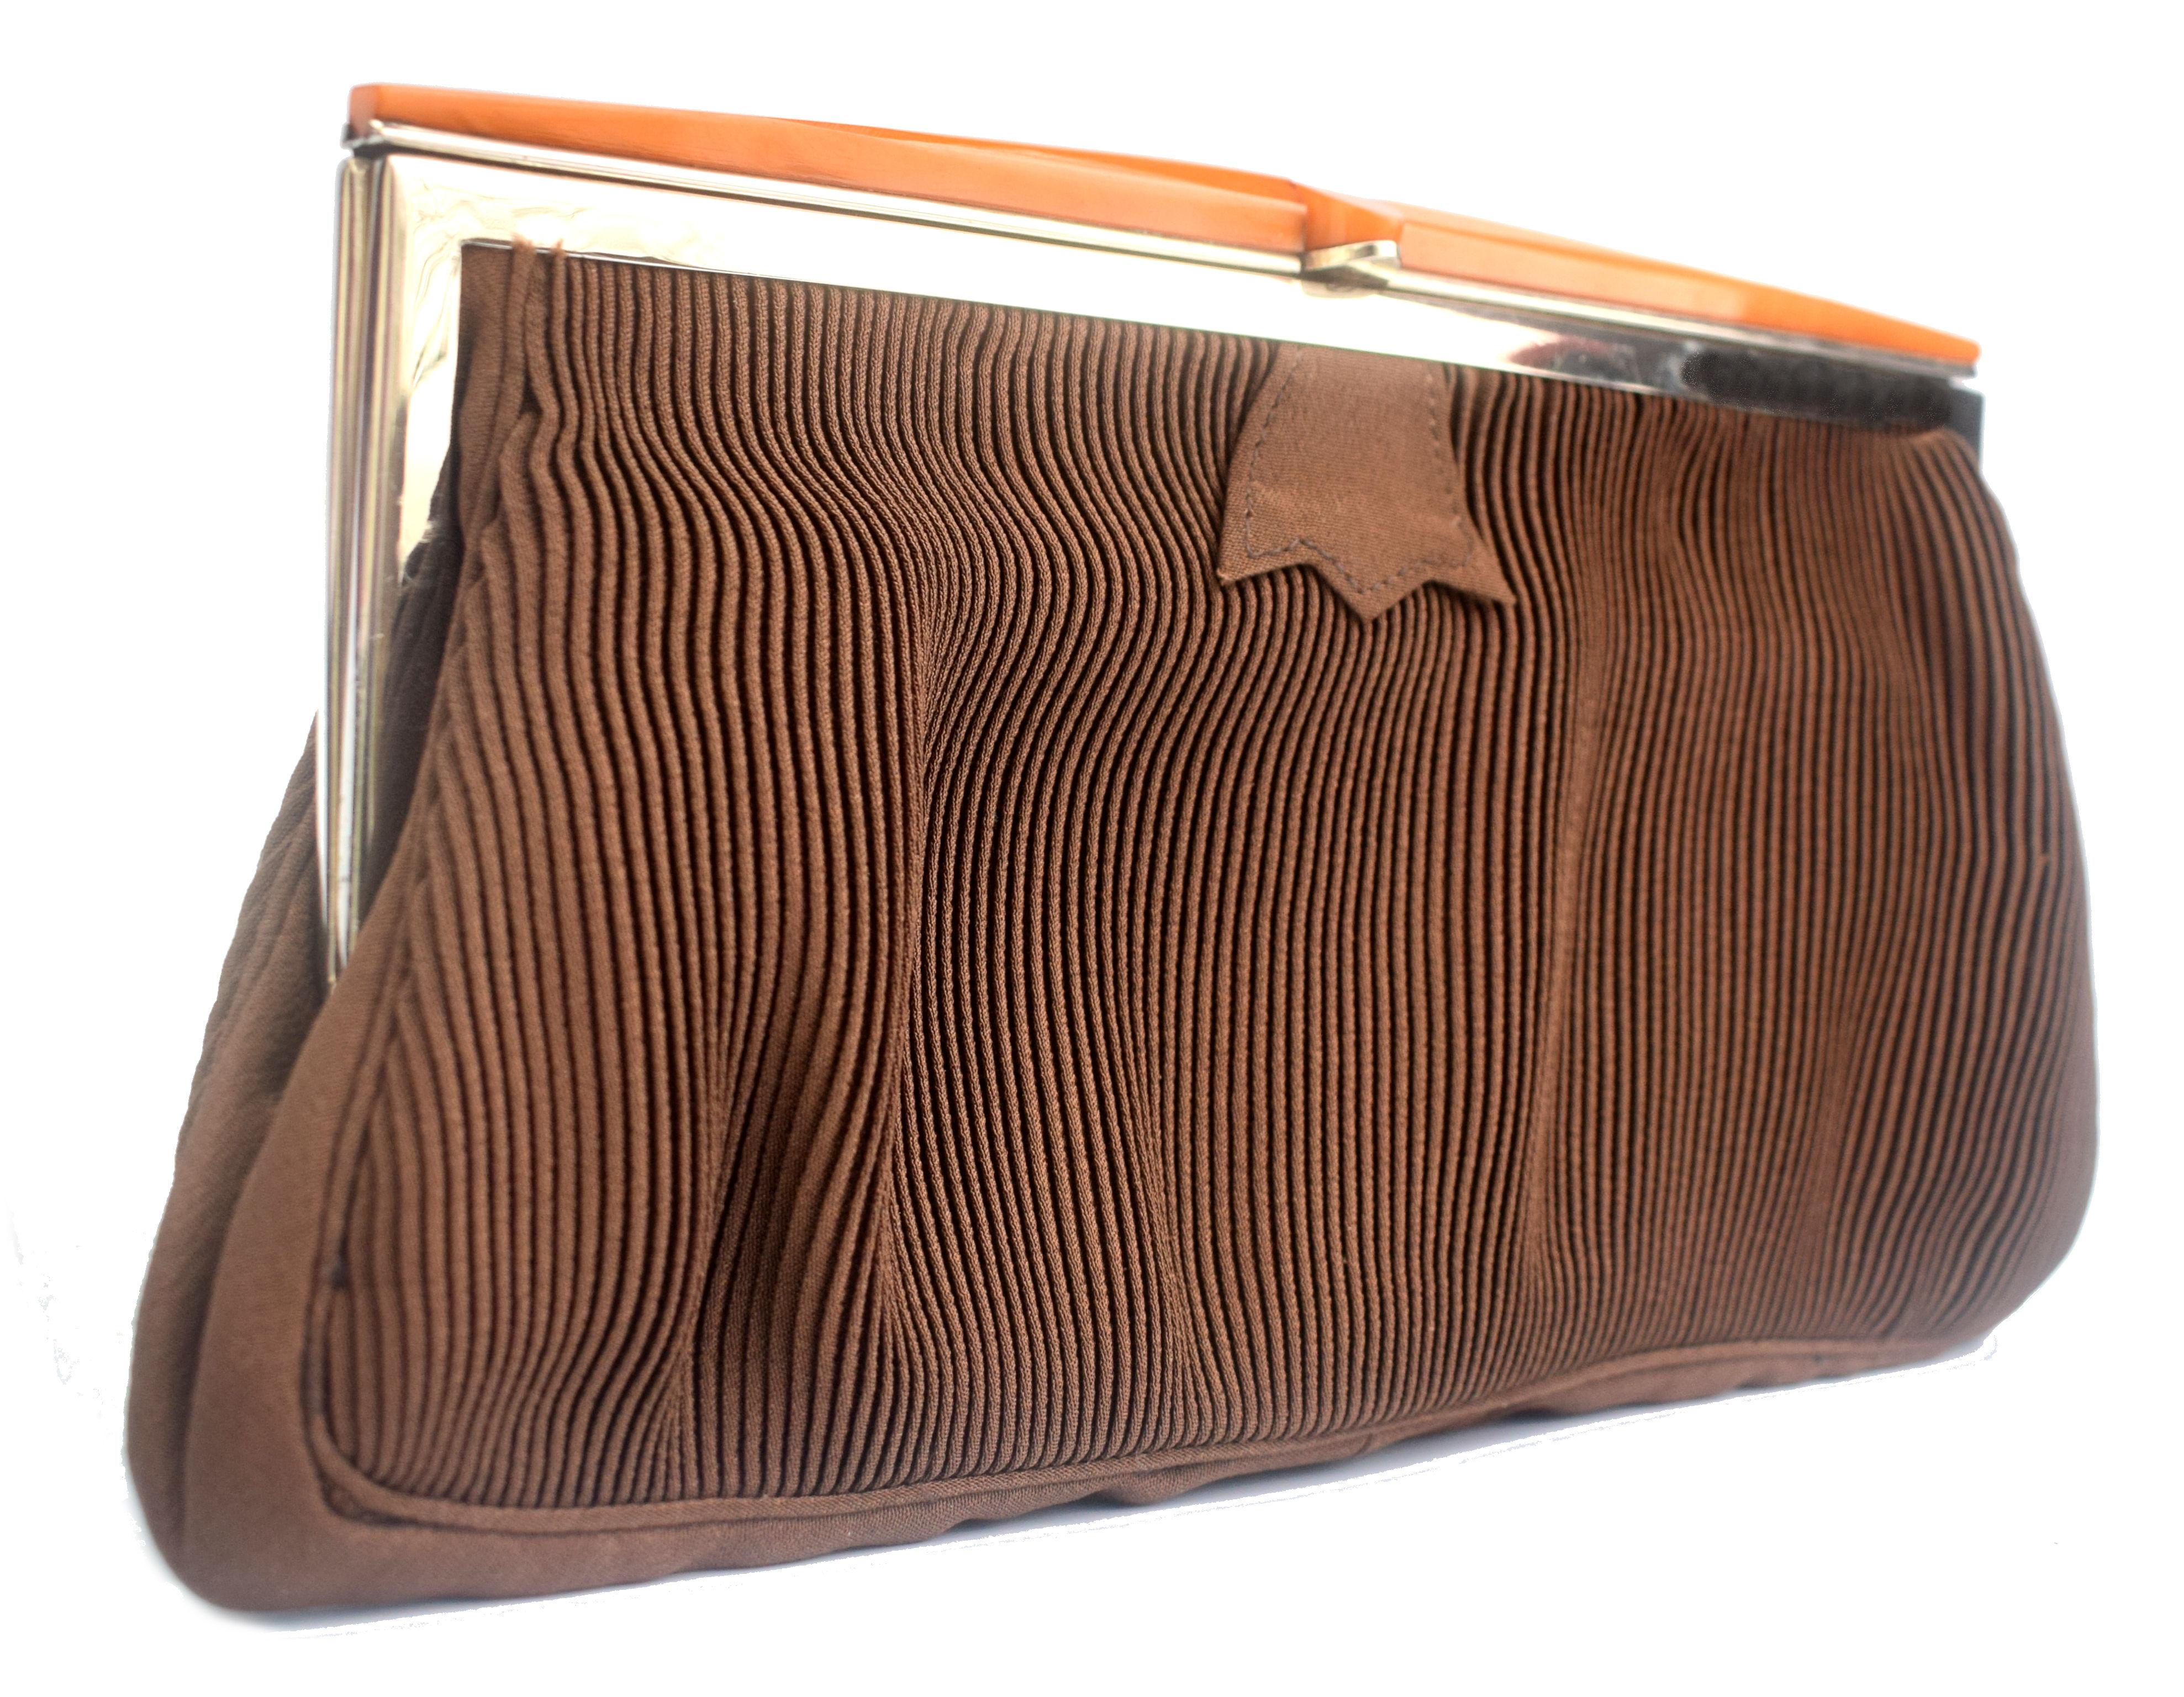 Wir bieten Ihnen diese wunderbar stilvolle englische Damenhandtasche aus Corde mit einem butterscotchfarbenen Katalin-Bakelit-Verschluss an. Es handelt sich um eine absolut authentische Tasche in einer wunderschönen Art-Déco-Form aus den späten